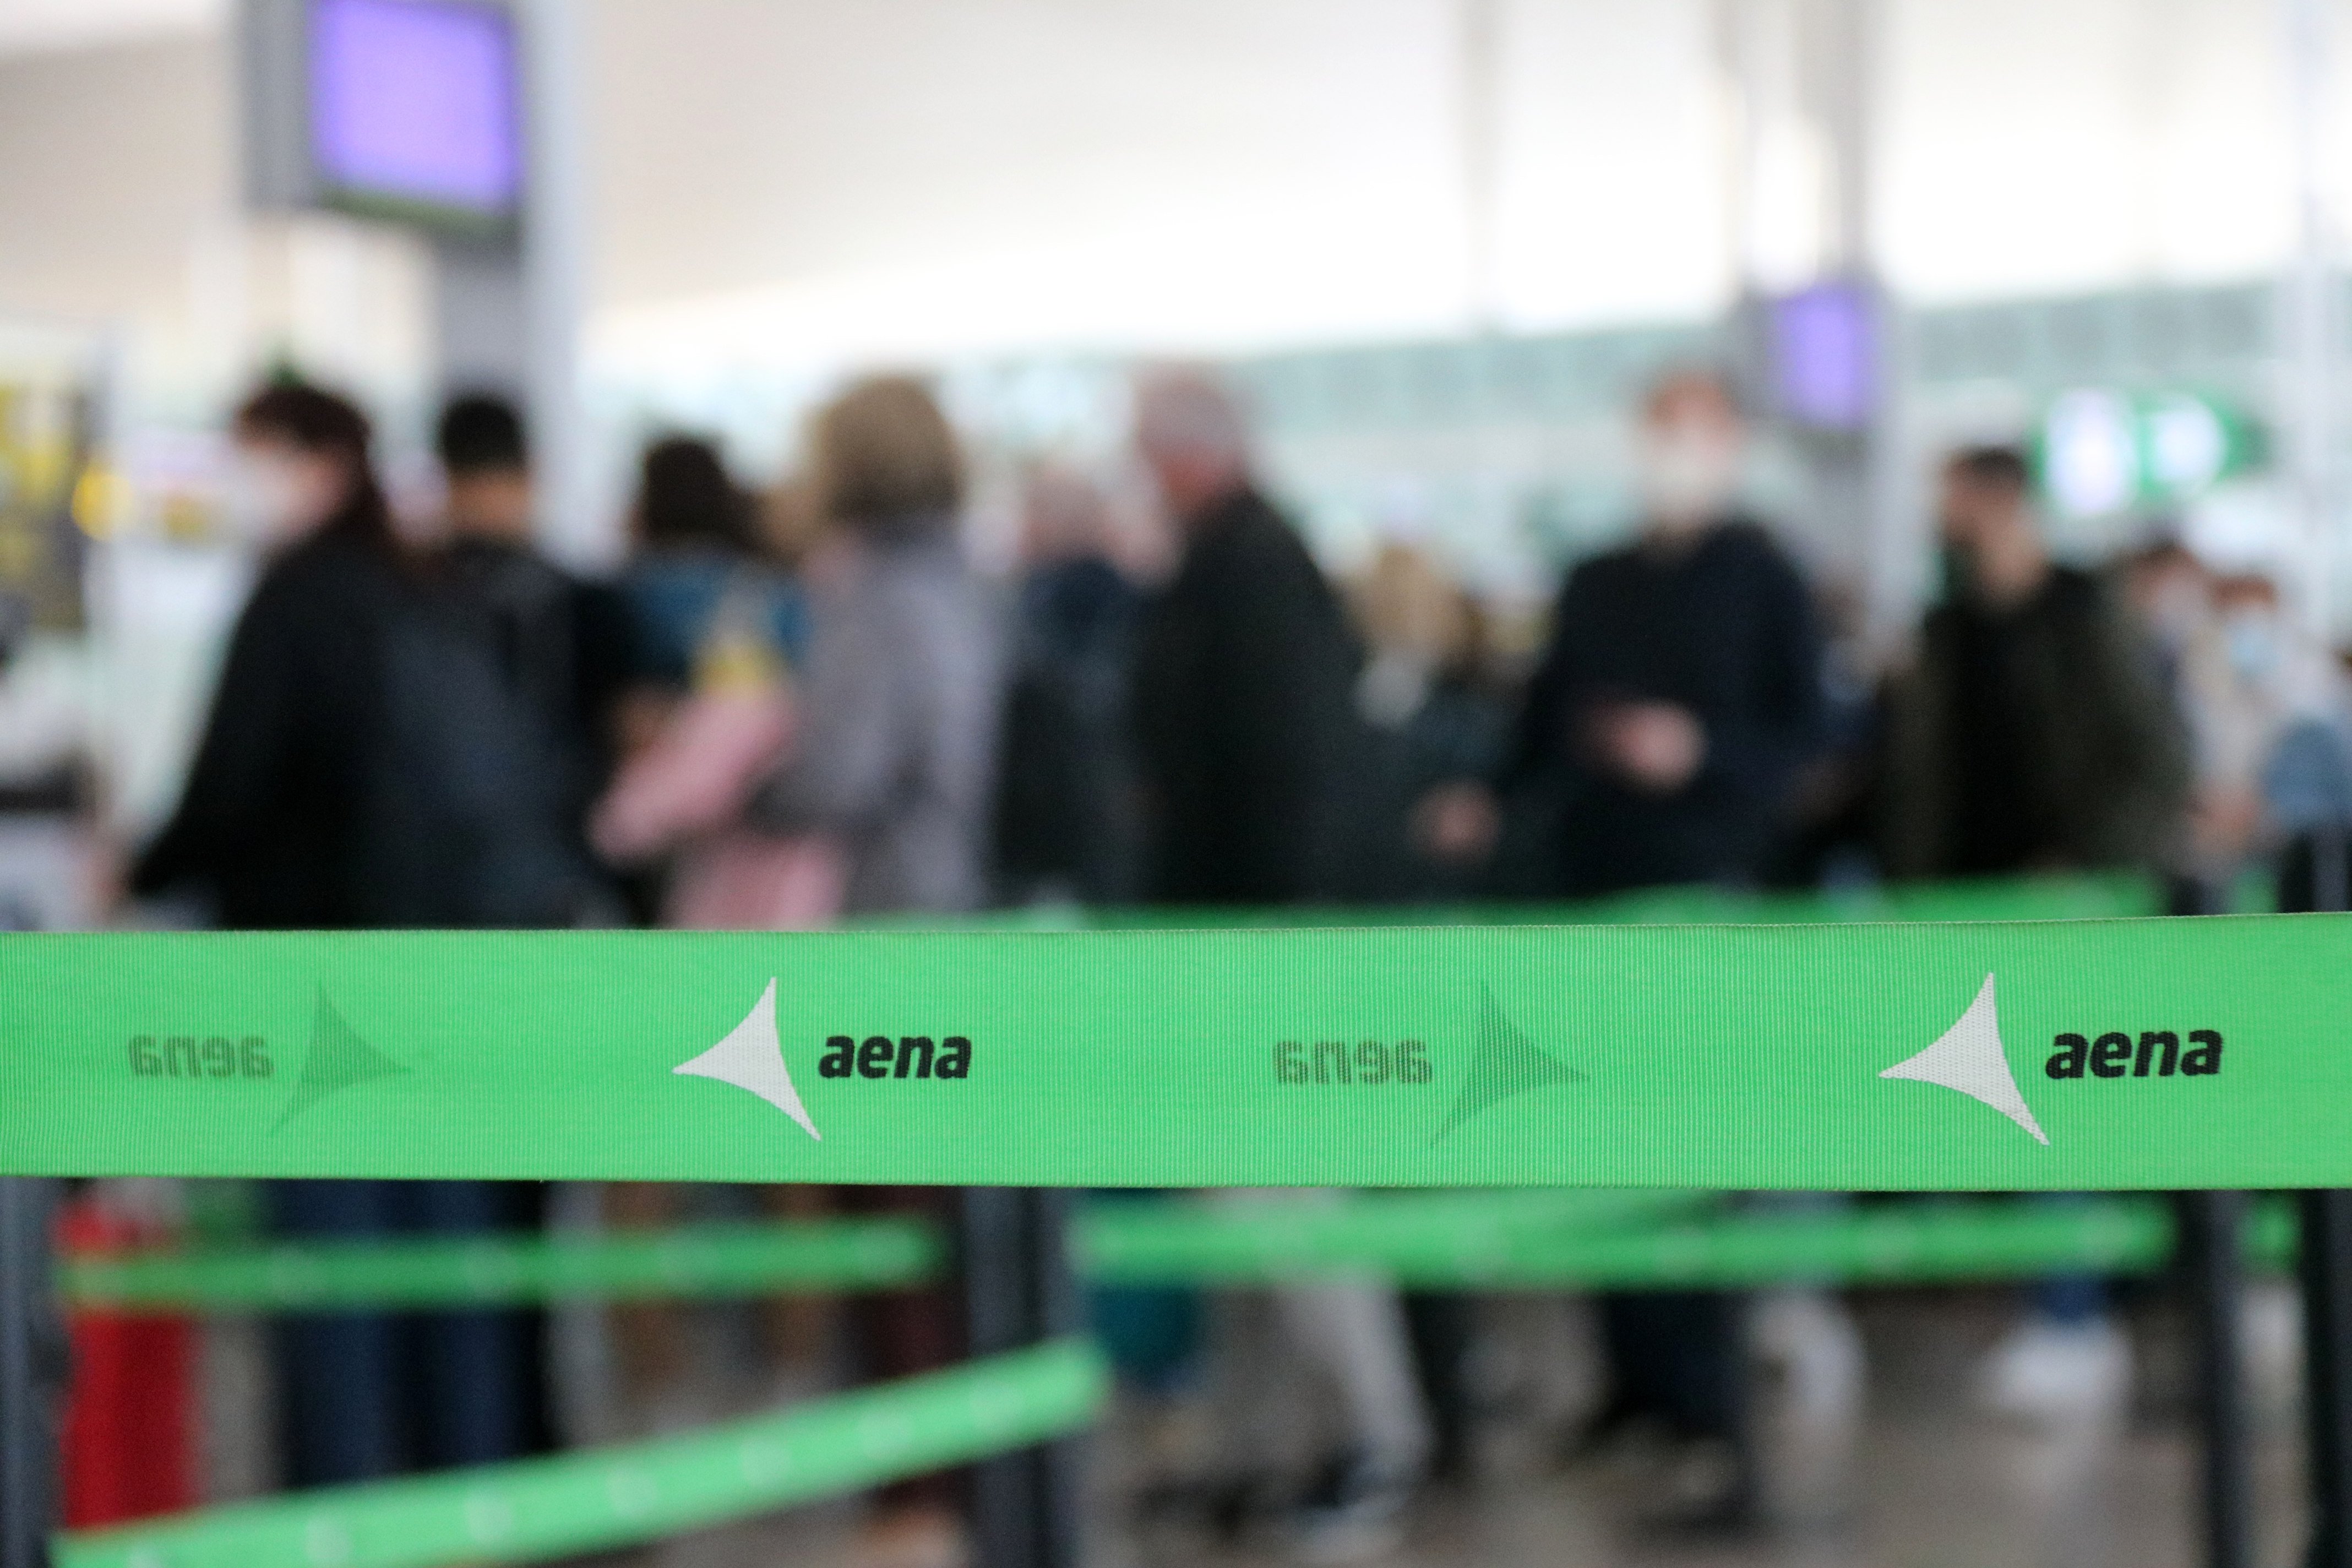 L'aeroport del Prat recupera l'operativa total després de dos anys de pandèmia